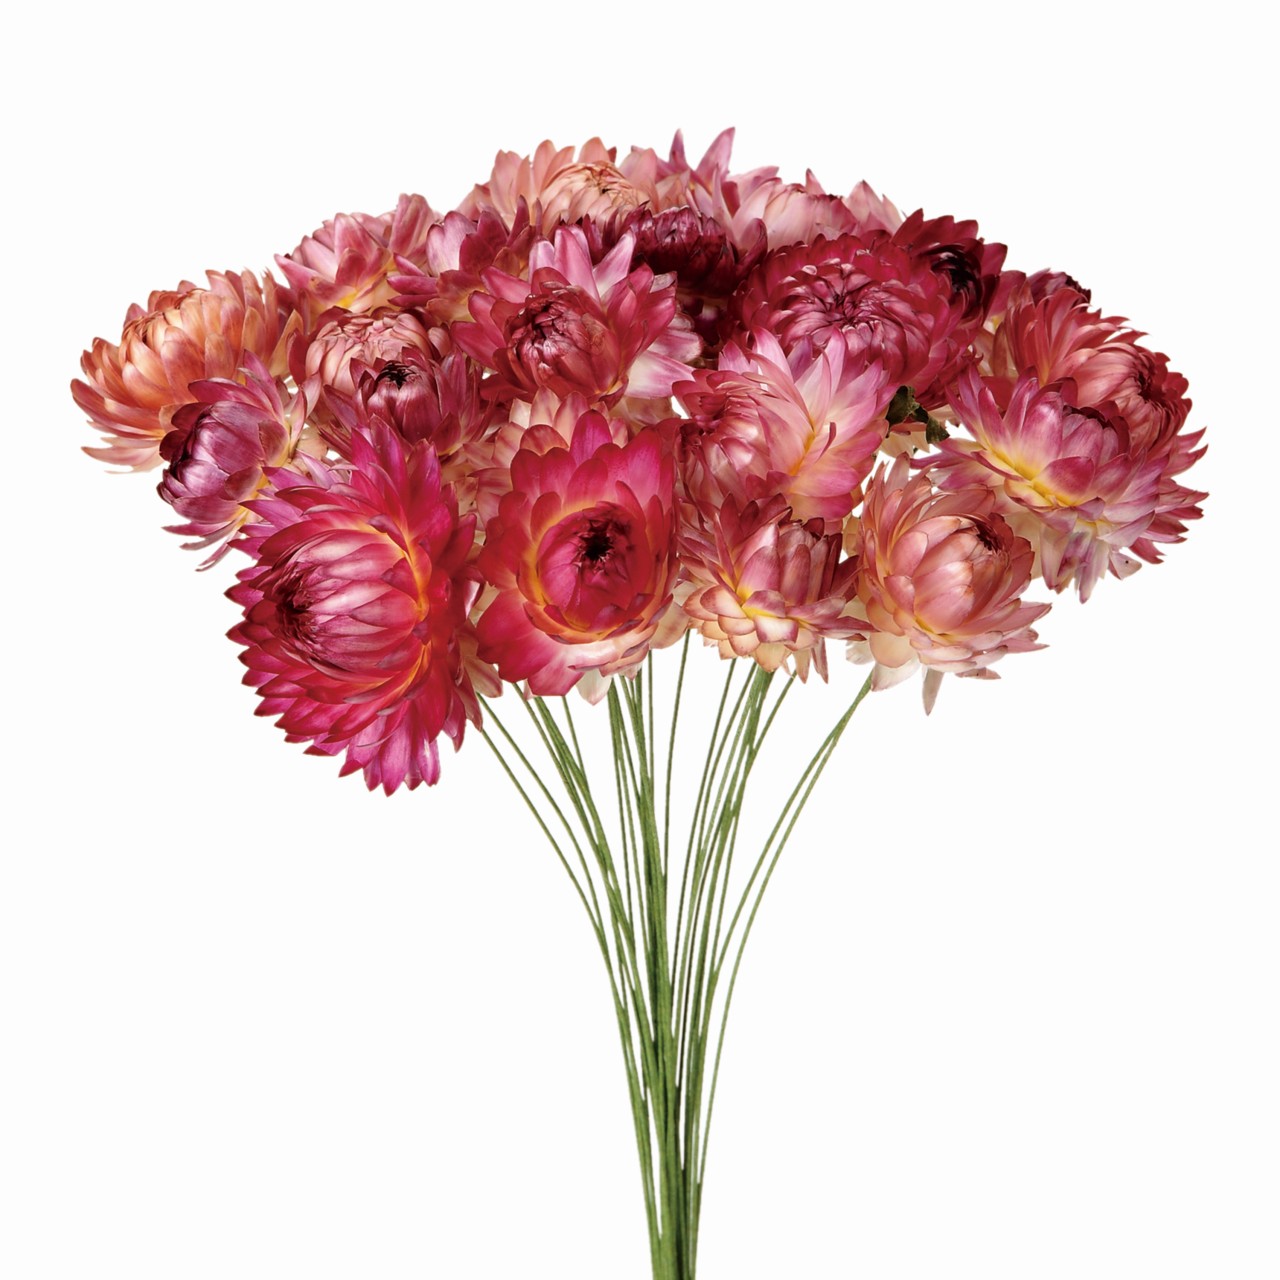 マイフラ 通販 麦ワラ菊ワイヤー付 ピンク ドライフラワー Fd 002 ナチュラル ピンク ドライフラワー ナチュラル素材 全国にmagiq 花器 花資材などをお届けします